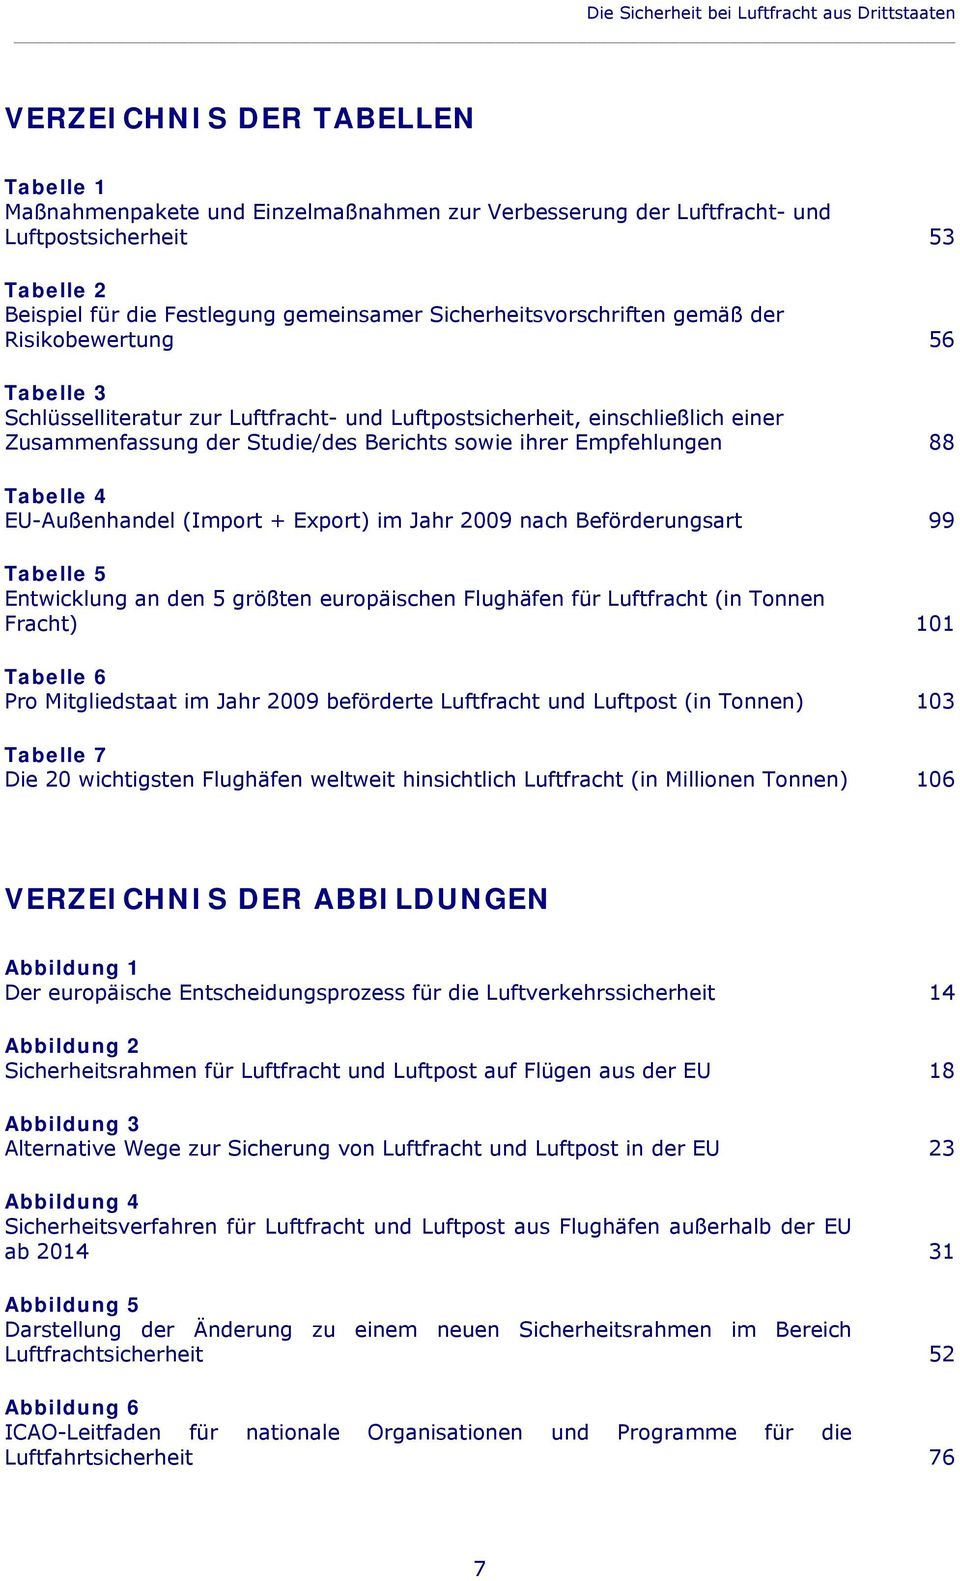 Studie/des Berichts sowie ihrer Empfehlungen 88 Tabelle 4 EU-Außenhandel (Import + Export) im Jahr 2009 nach Beförderungsart 99 Tabelle 5 Entwicklung an den 5 größten europäischen Flughäfen für